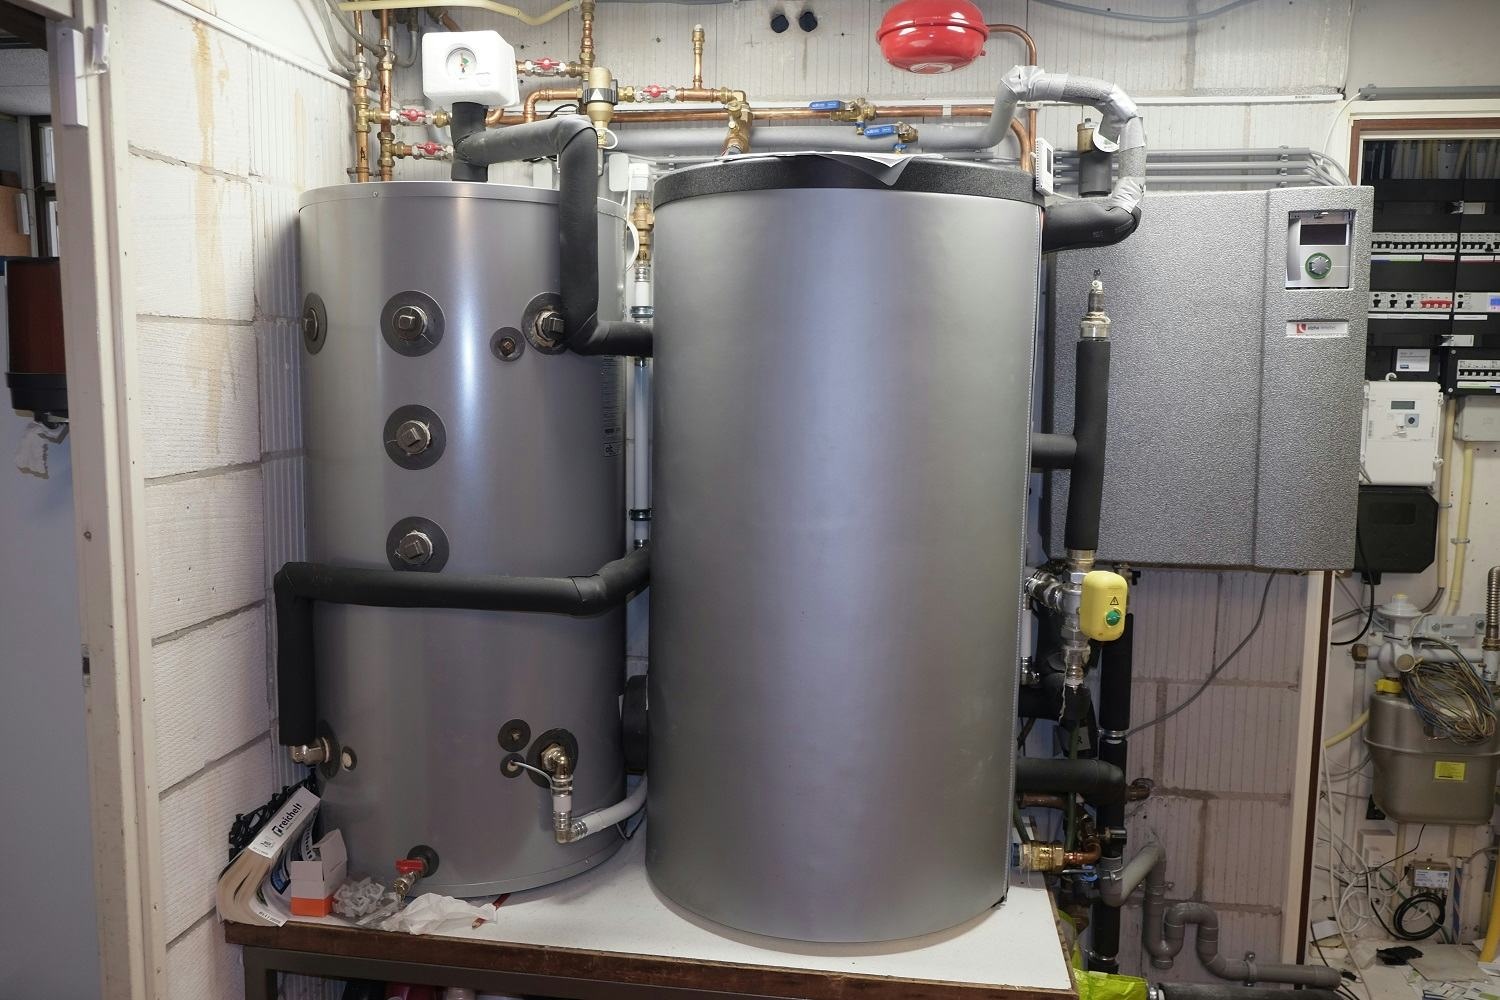 De warmtepompinstallatie met buffervaten voor verwarming en warm tapwater.